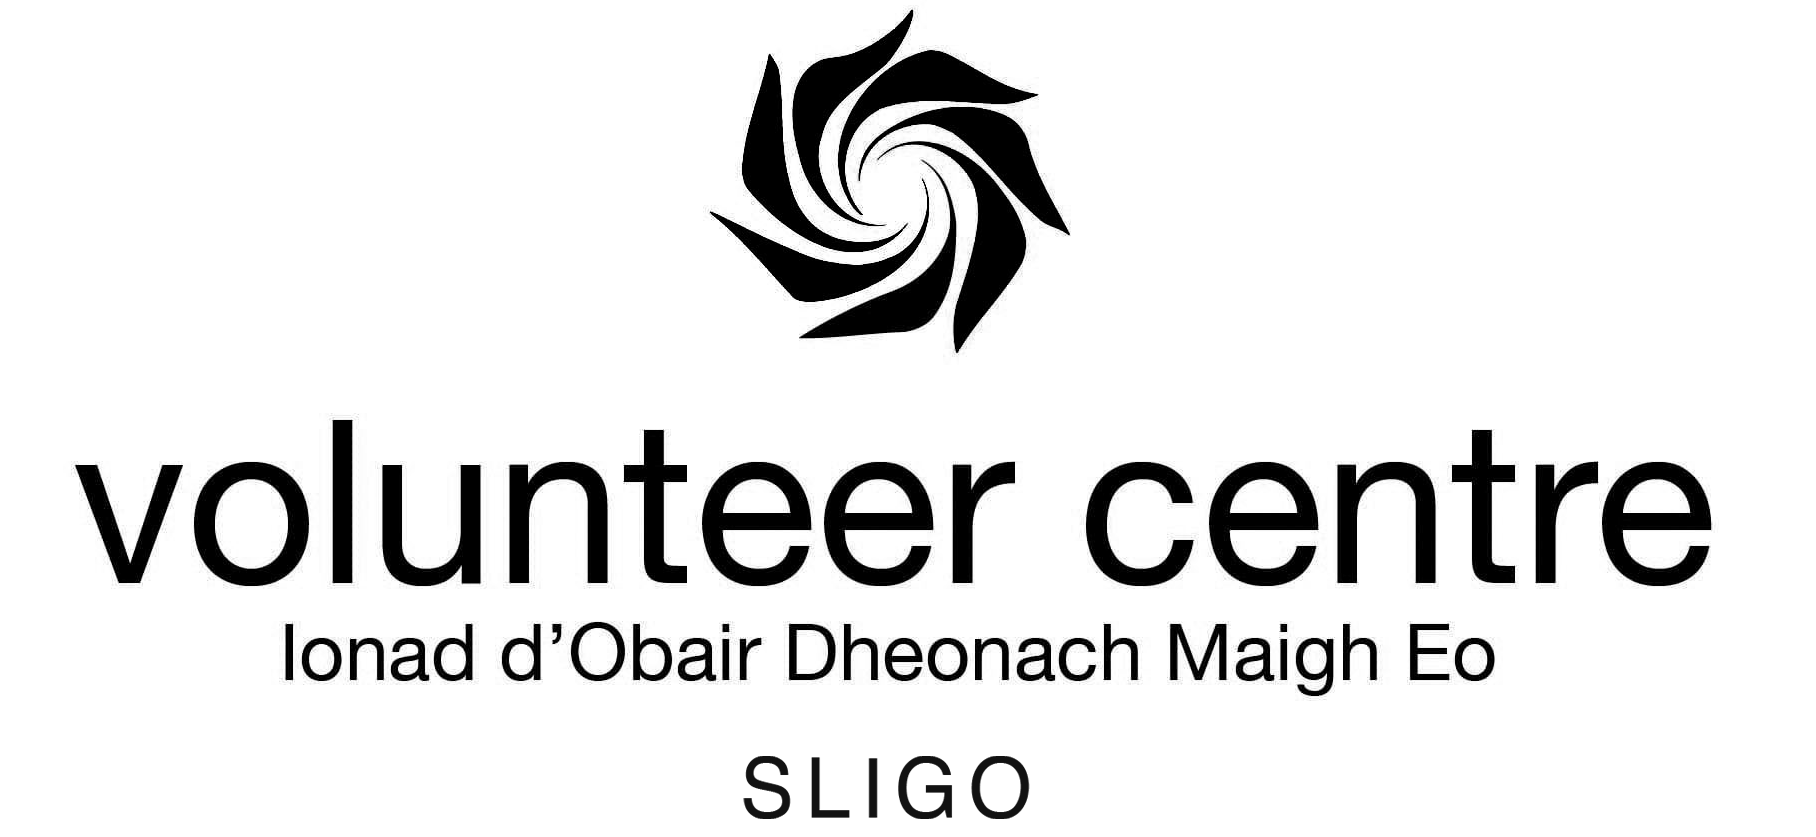 Volunteer Centre Sligo Logo